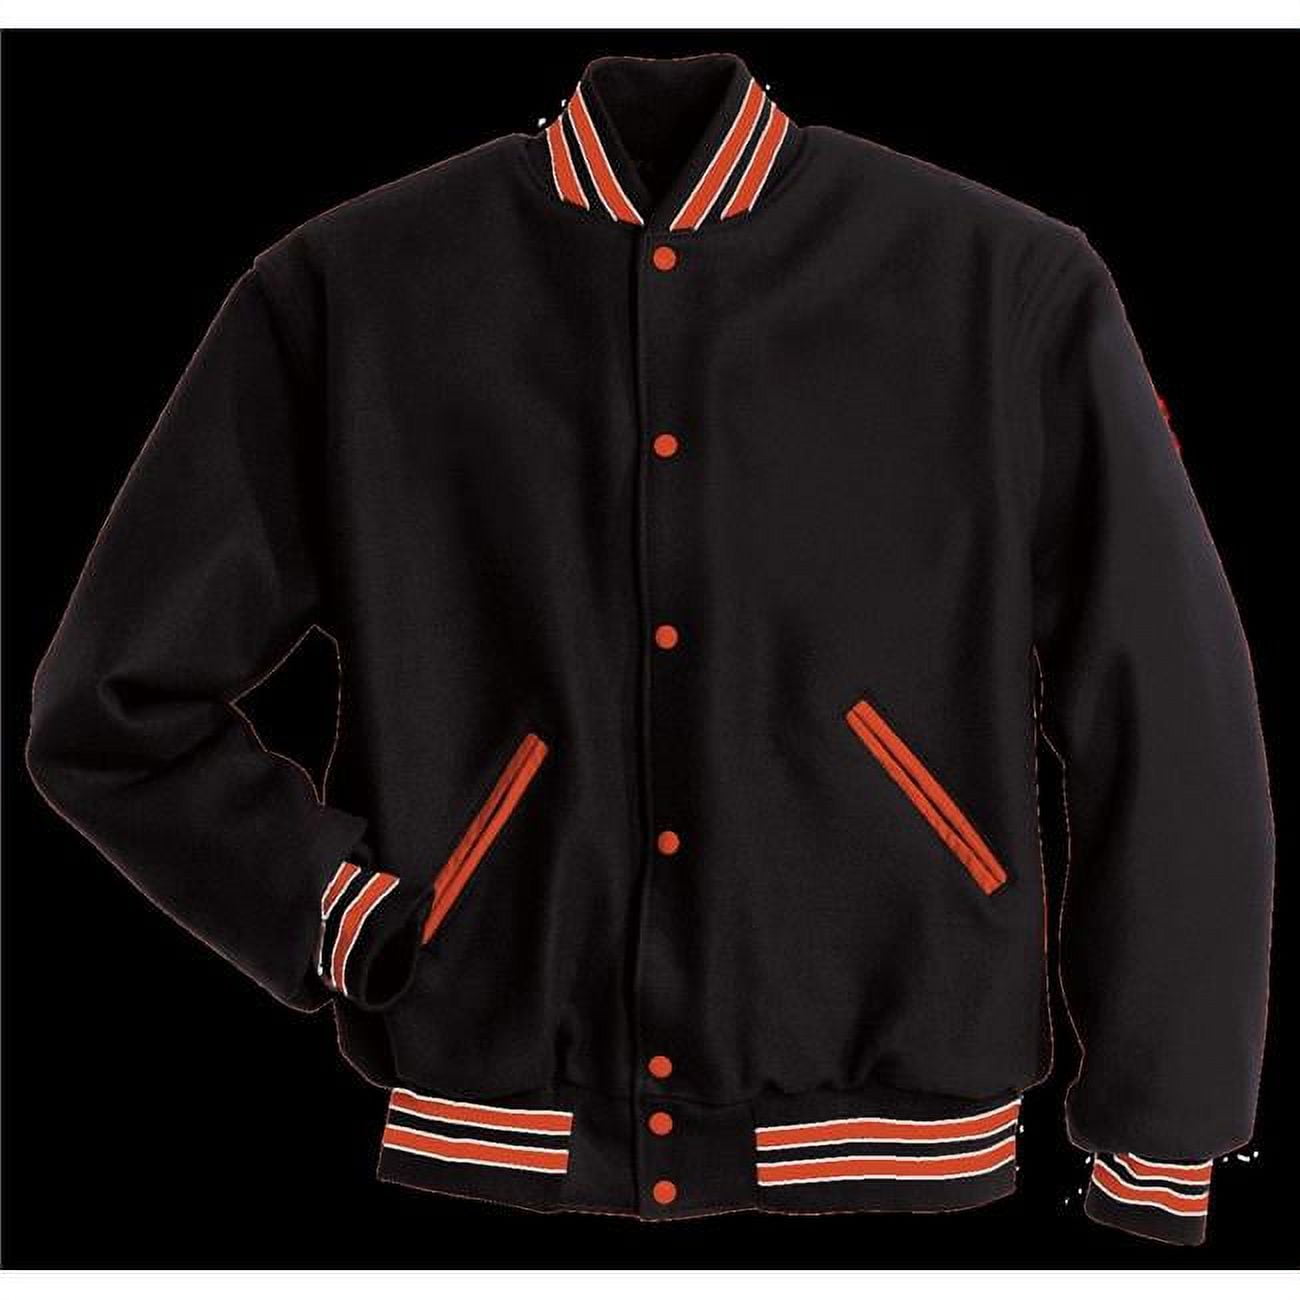 Holloway 224182.U37.S Adult Letterman Jacket - Black, Burnt Orange ...